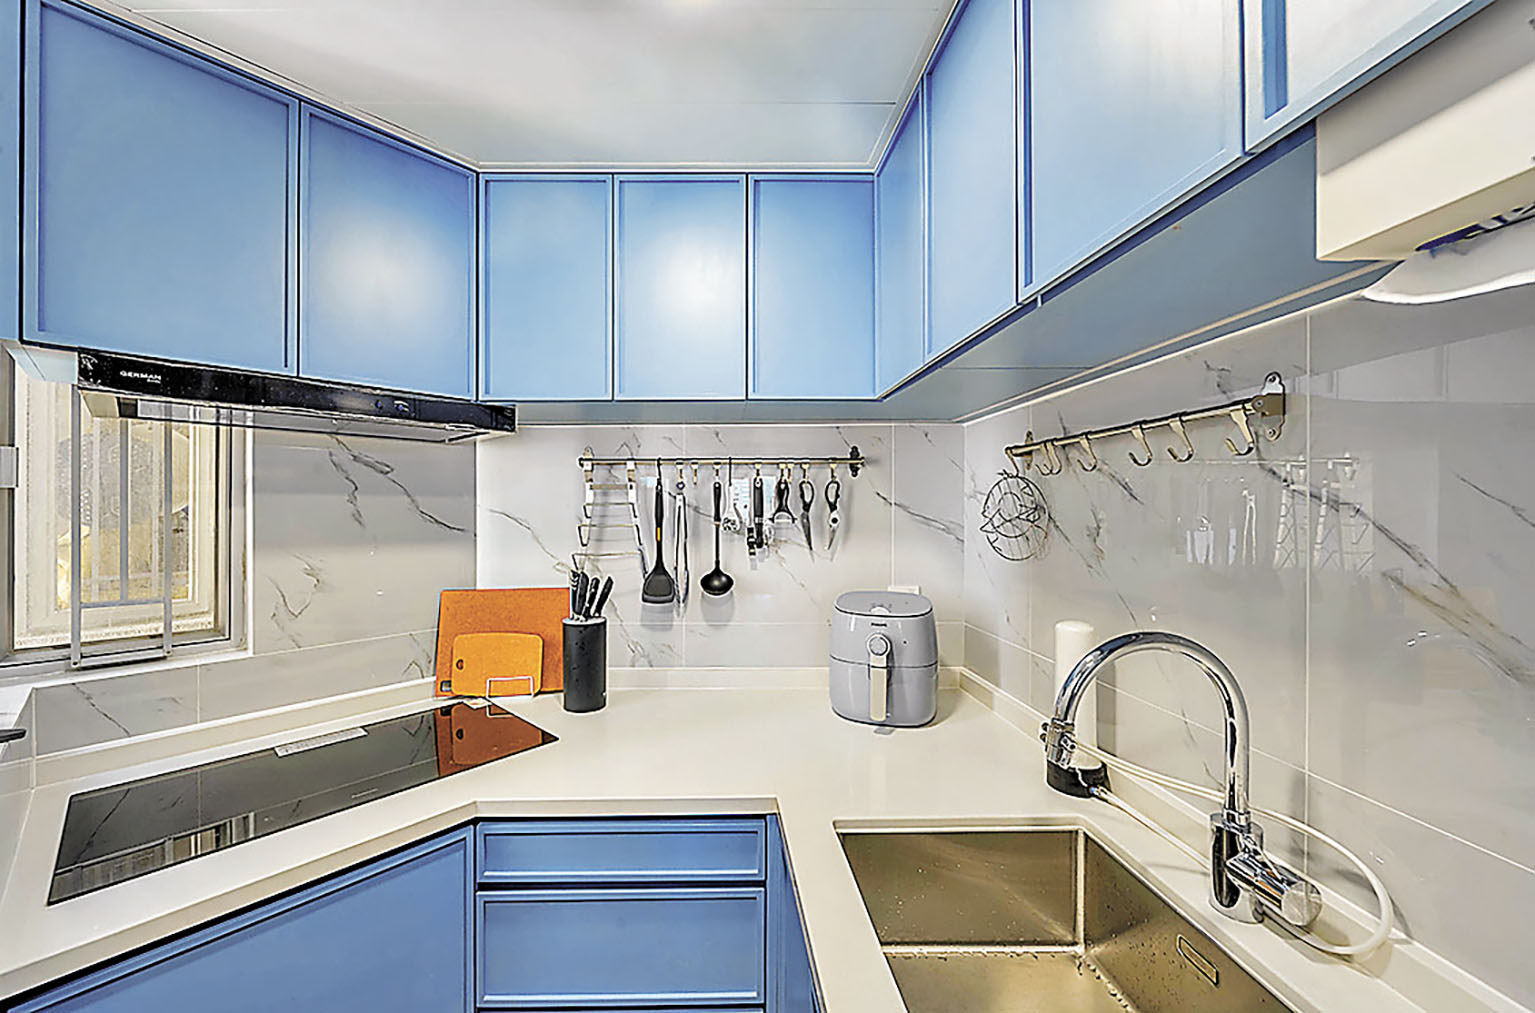 ■廚房收納櫃和廚枱藍與白色彩配搭十分柔和。